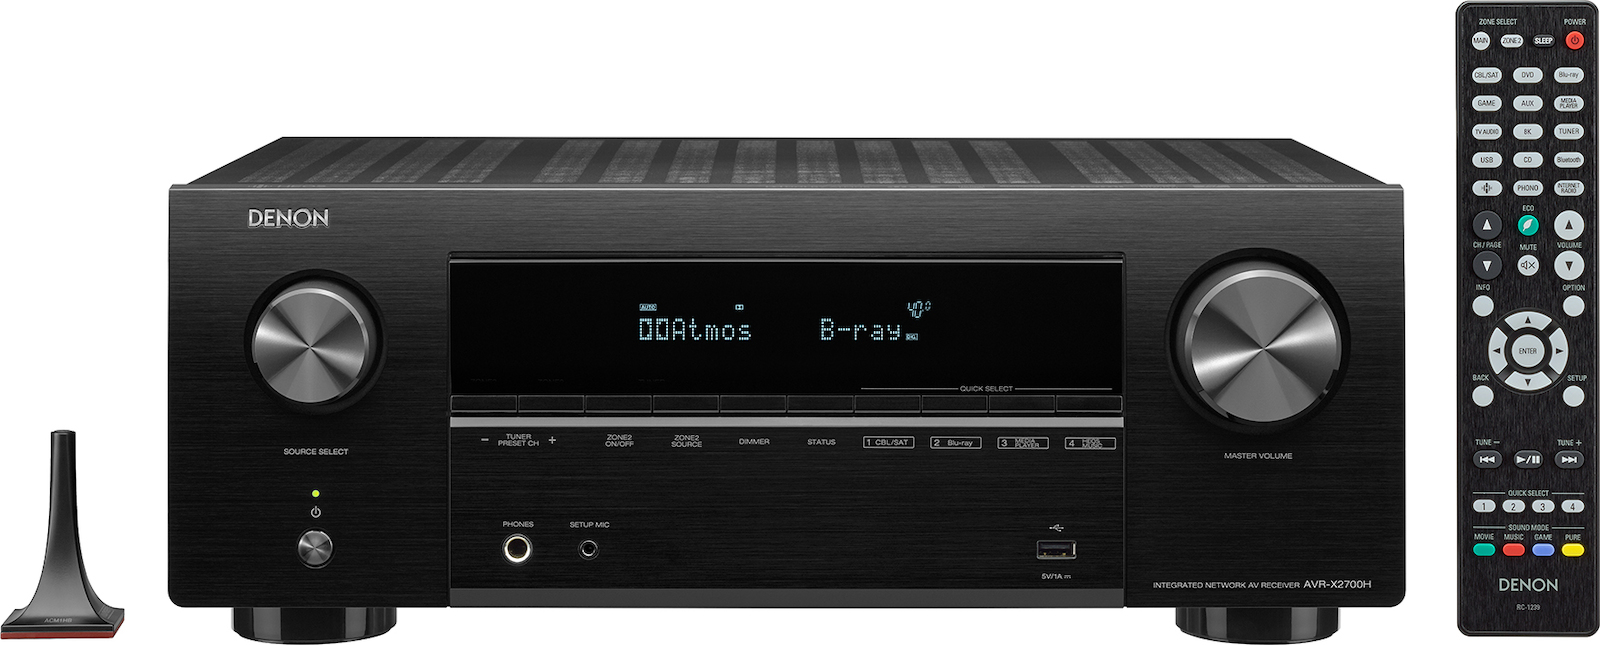 Denon AVR-X2700H Ραδιοενισχυτής Home Cinema 4K/8K 7.2 Καναλιών 95W/8Ω 150W/6Ω με HDR και Dolby Atmos Μαύρος